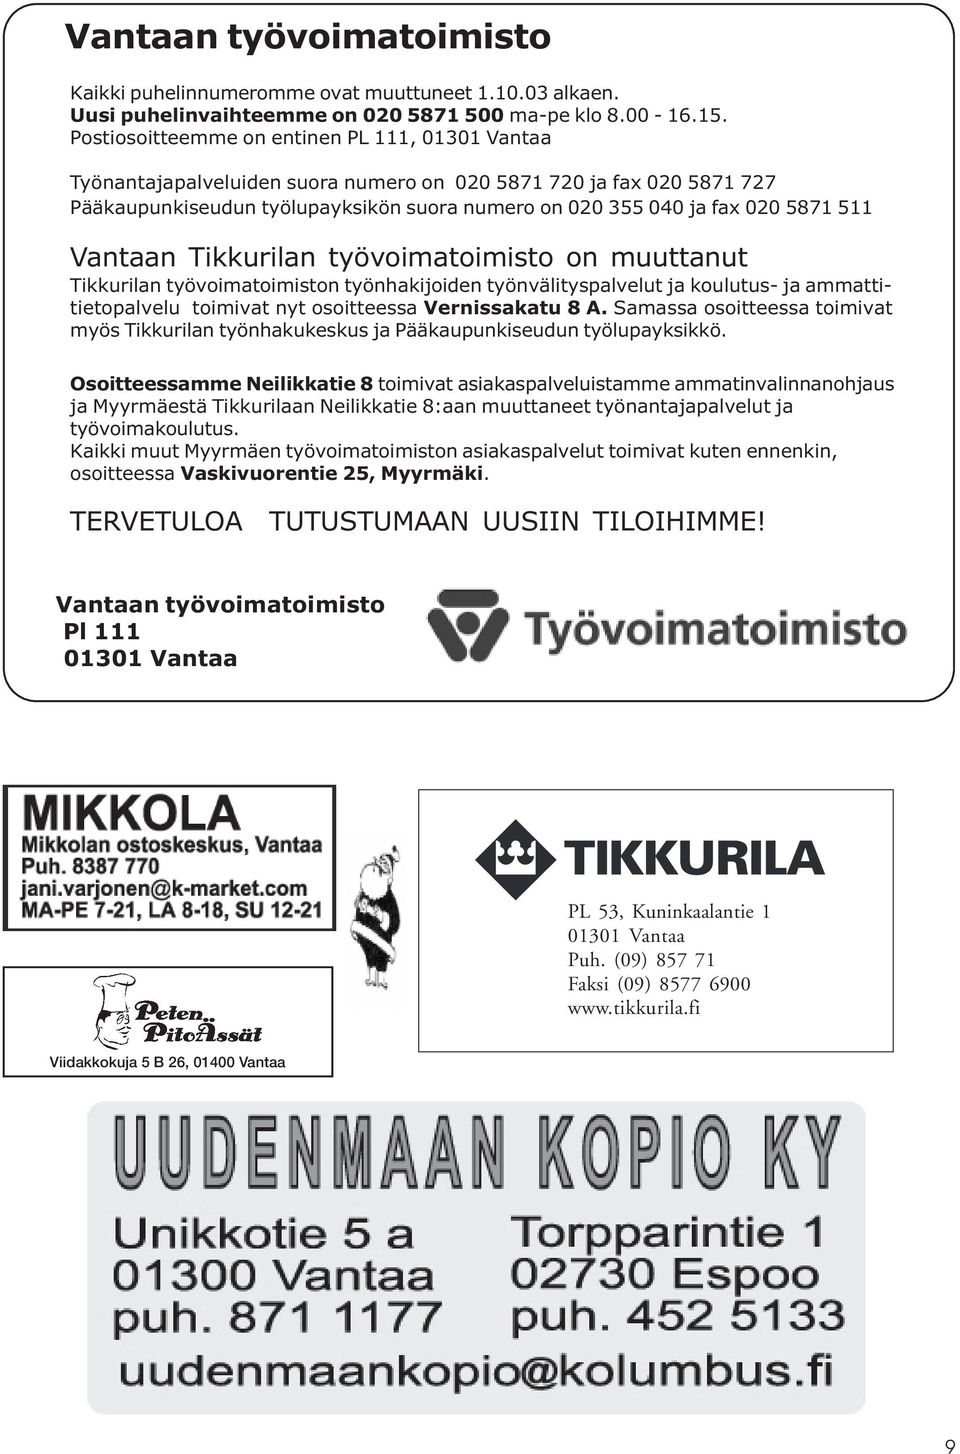 511 Vantaan Tikkurilan työvoimatoimisto on muuttanut Tikkurilan työvoimatoimiston työnhakijoiden työnvälityspalvelut ja koulutus- ja ammattitietopalvelu toimivat nyt osoitteessa Vernissakatu 8 A.